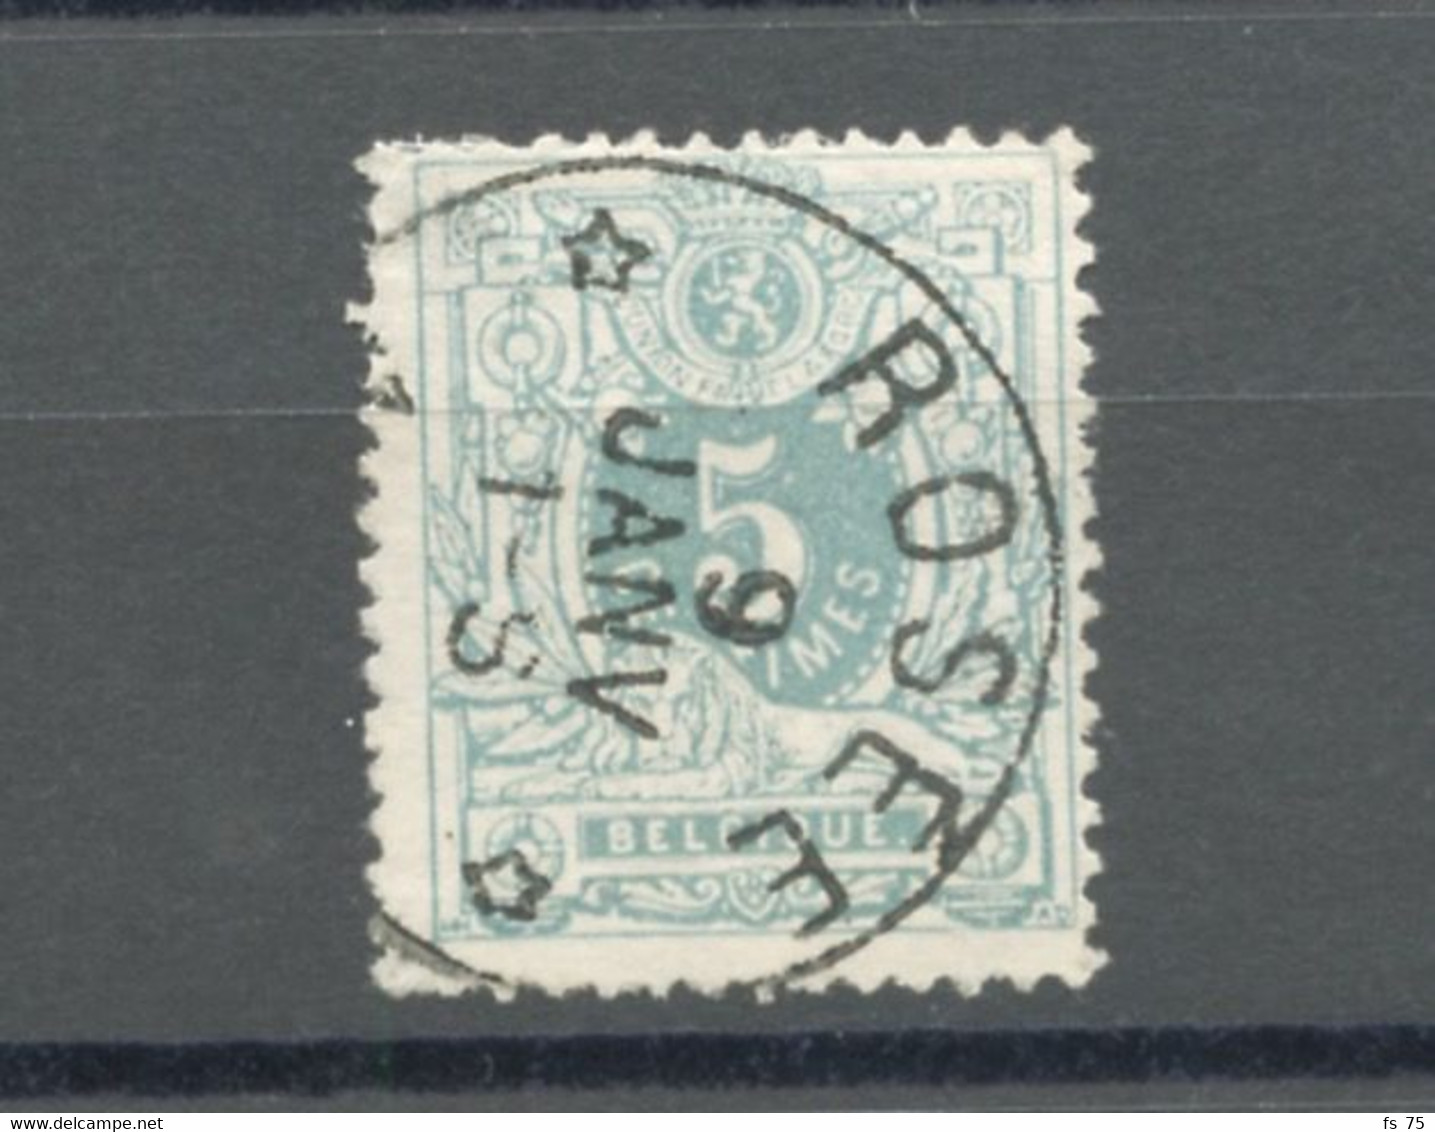 BELGIQUE - COB 45 - 5C VERT RELAIS A ETOILES ROSEE - 1869-1888 Lion Couché (Liegender Löwe)